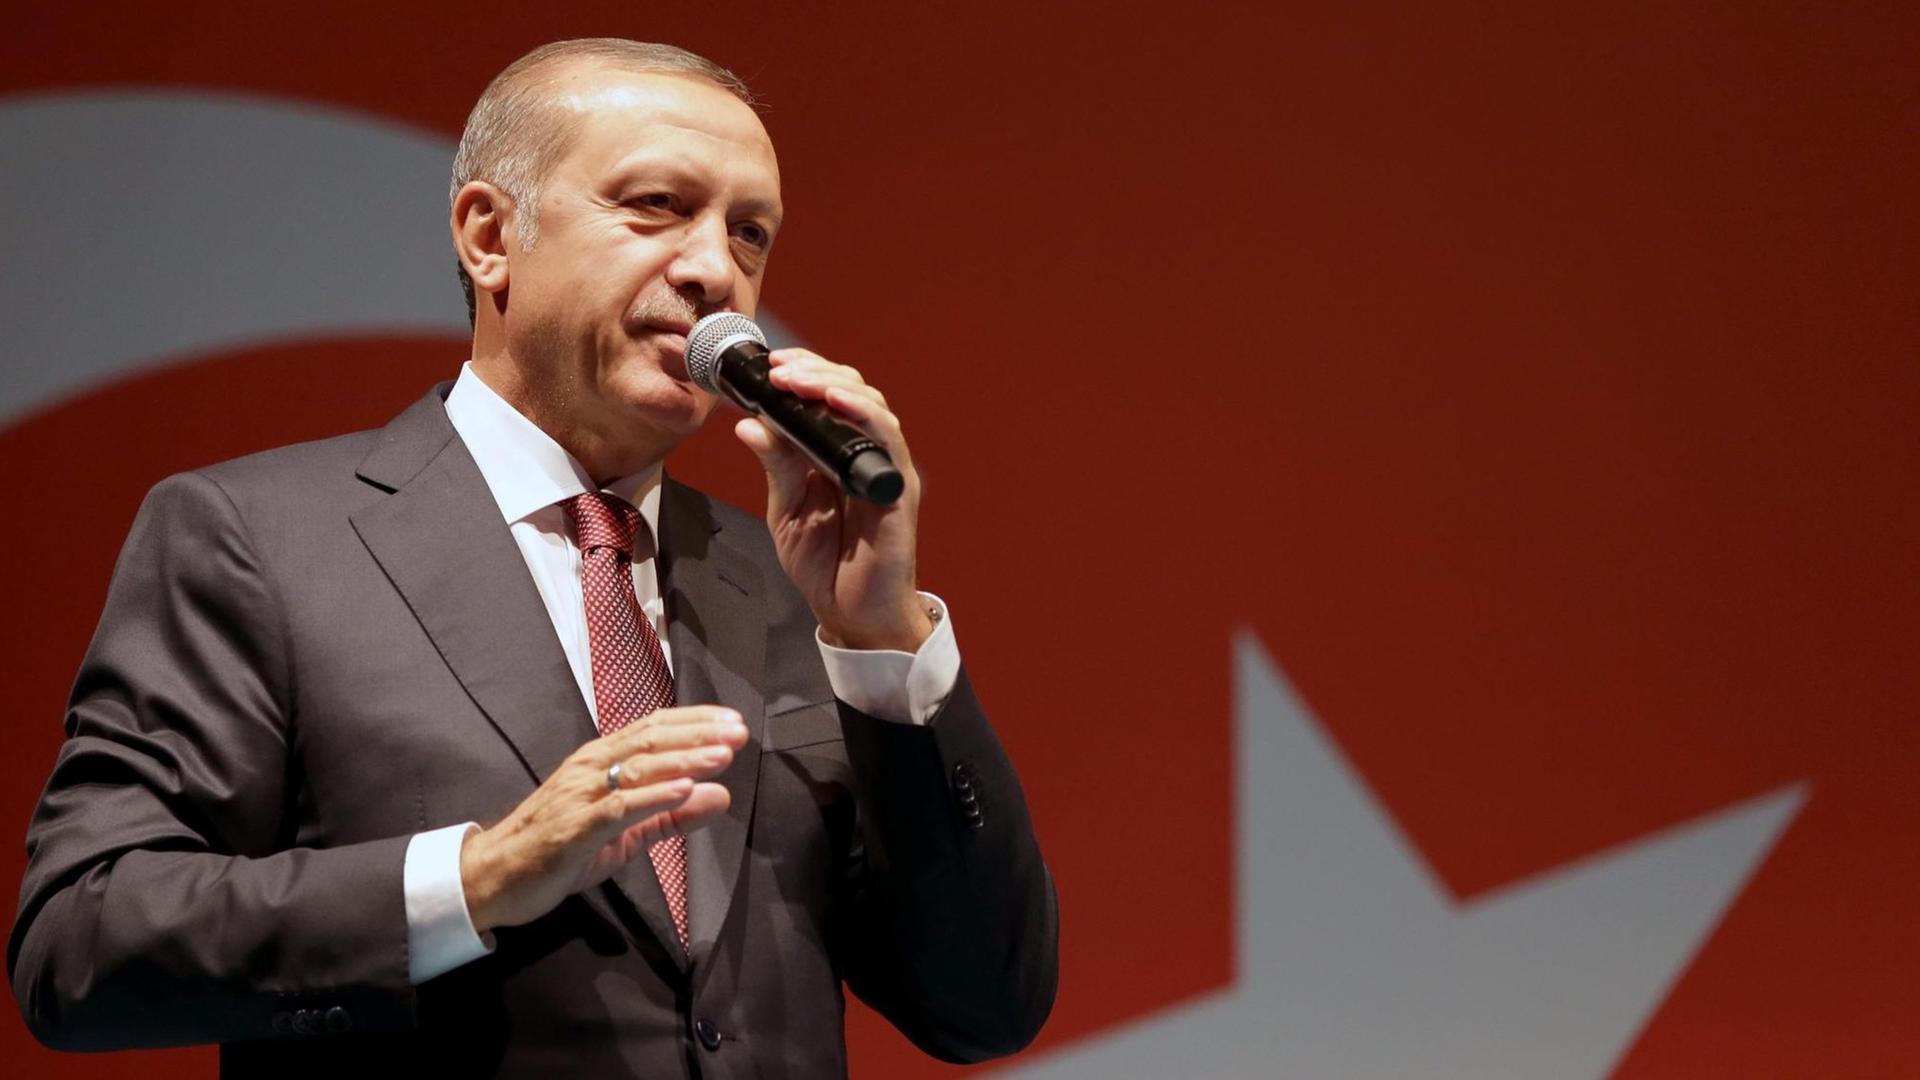 Sie sehen den türkischen Präsidenten Recep Tayyip Erdogan, er hält ein Mikrofon in der Hand, hinter ihm eine Türkei-Fahne.